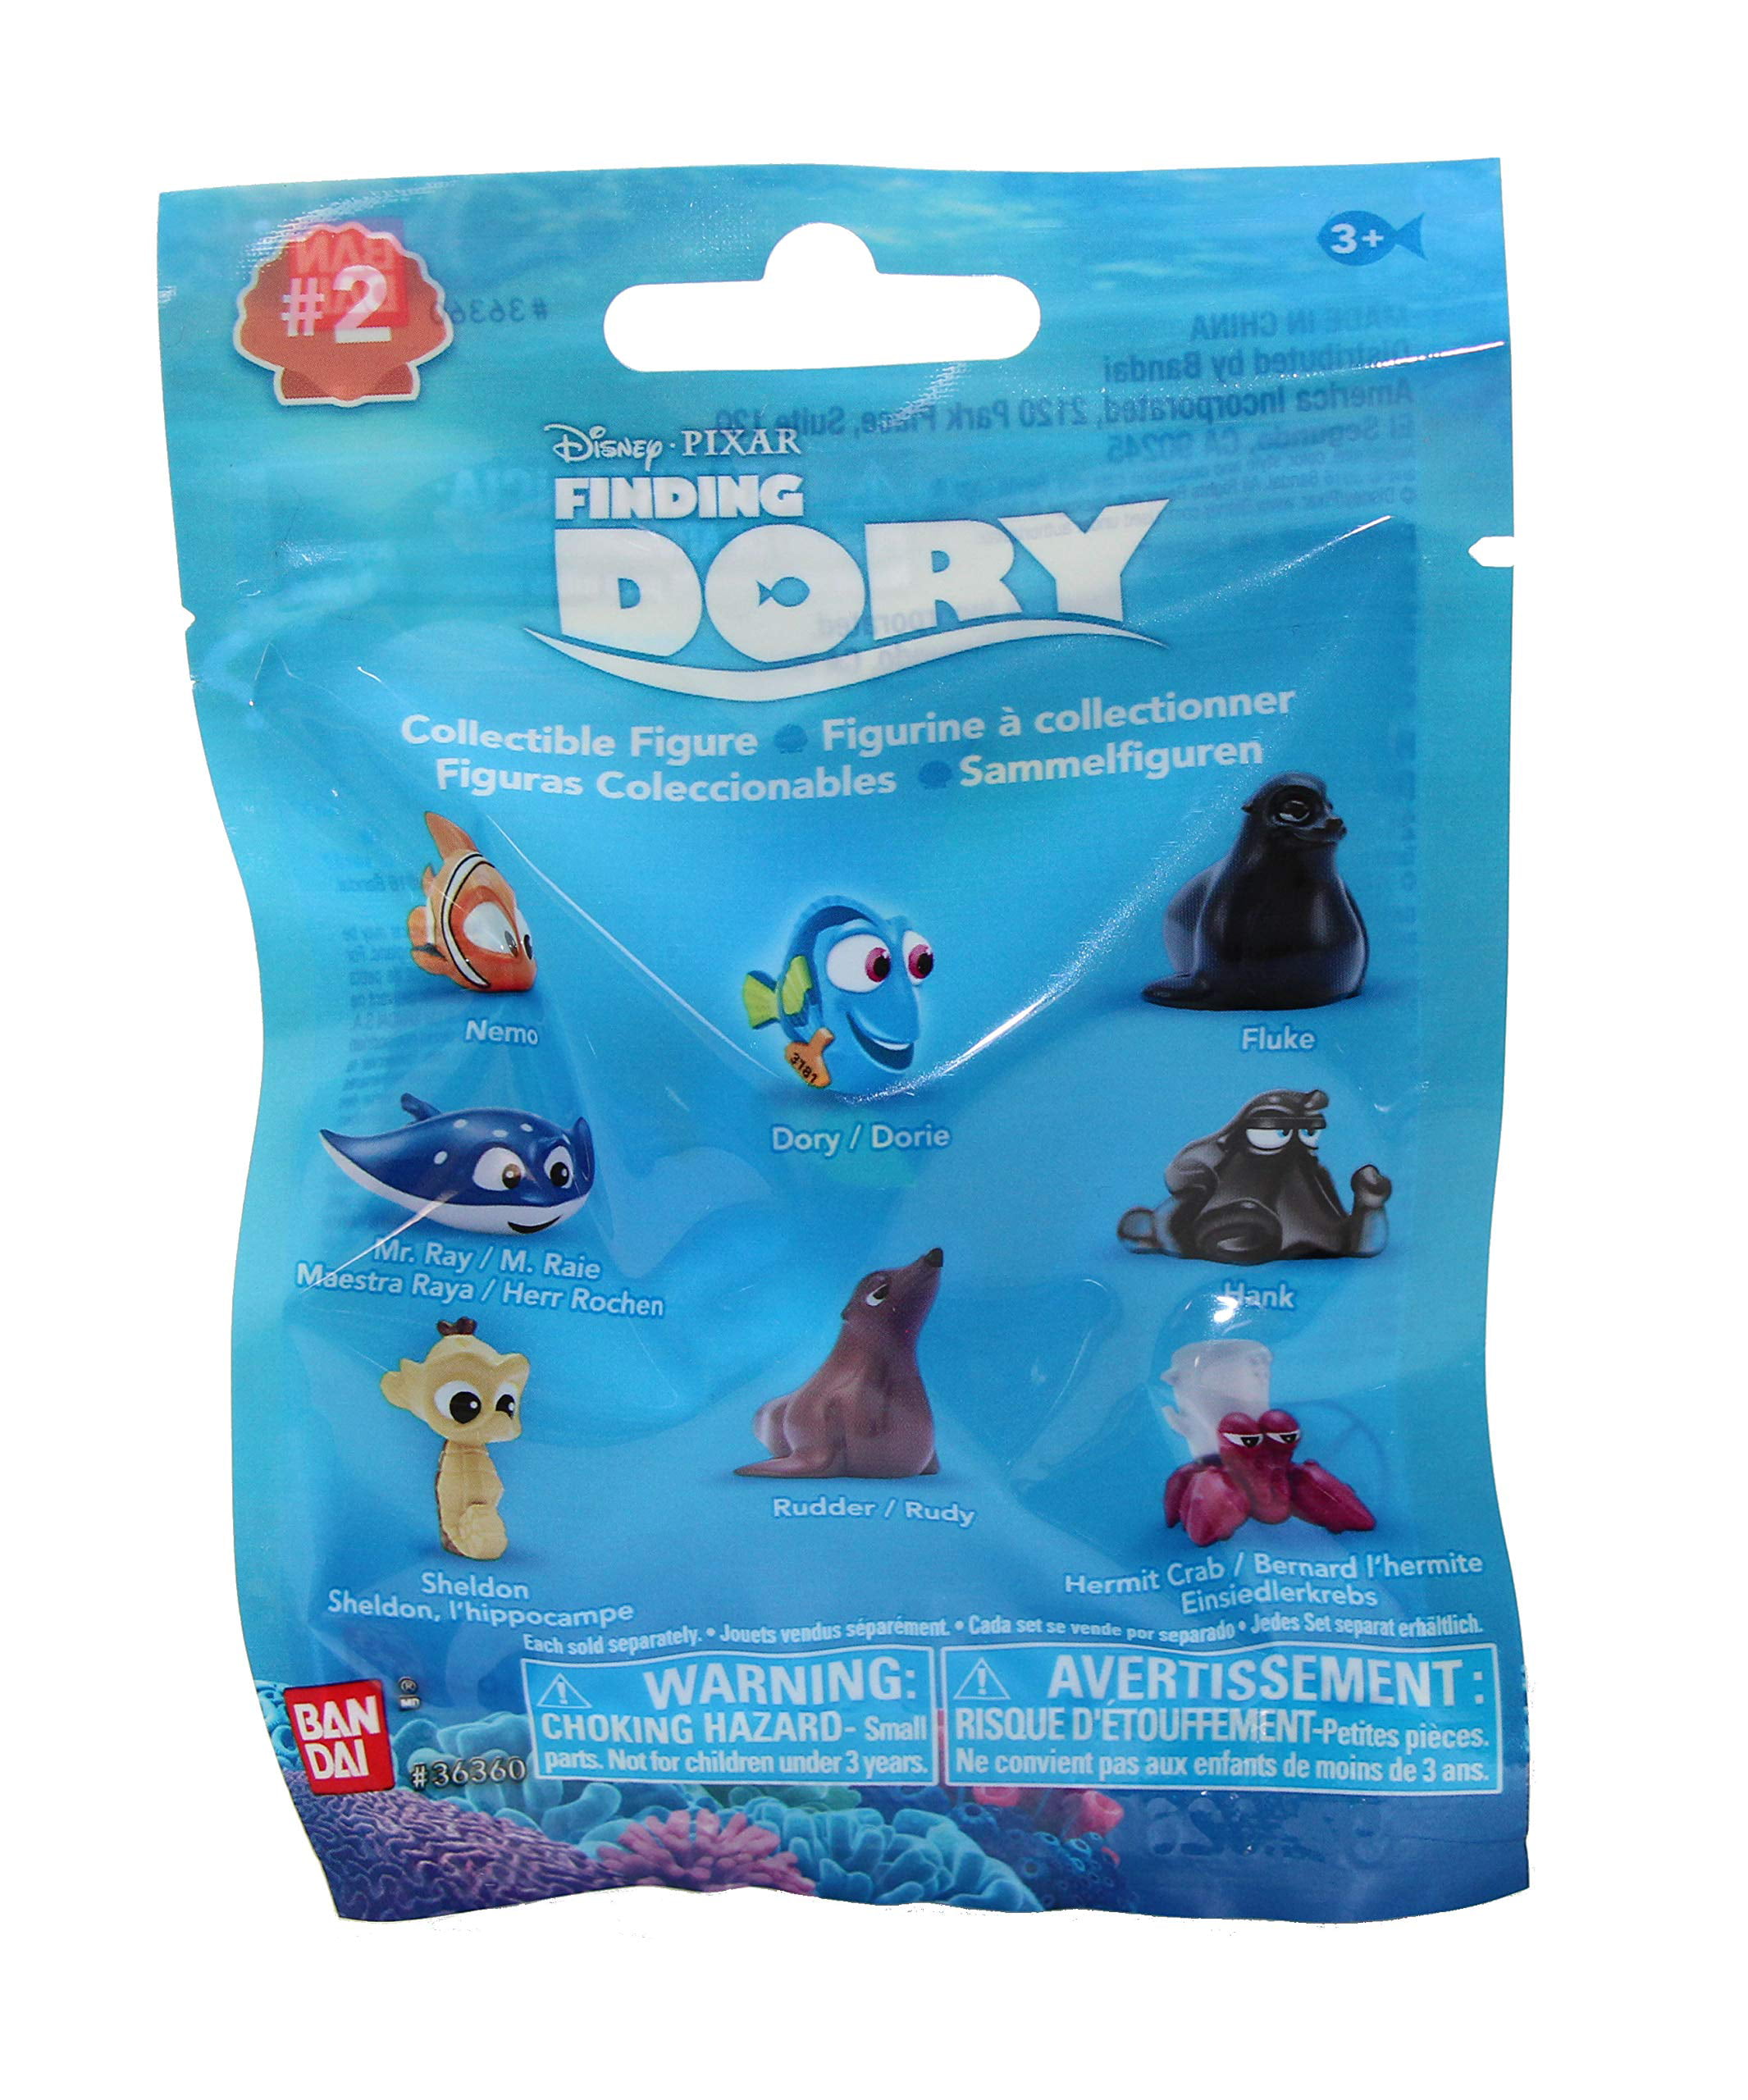 Pack of 2 Disney Pixar Finding Dory Blind Bags-Series 2 